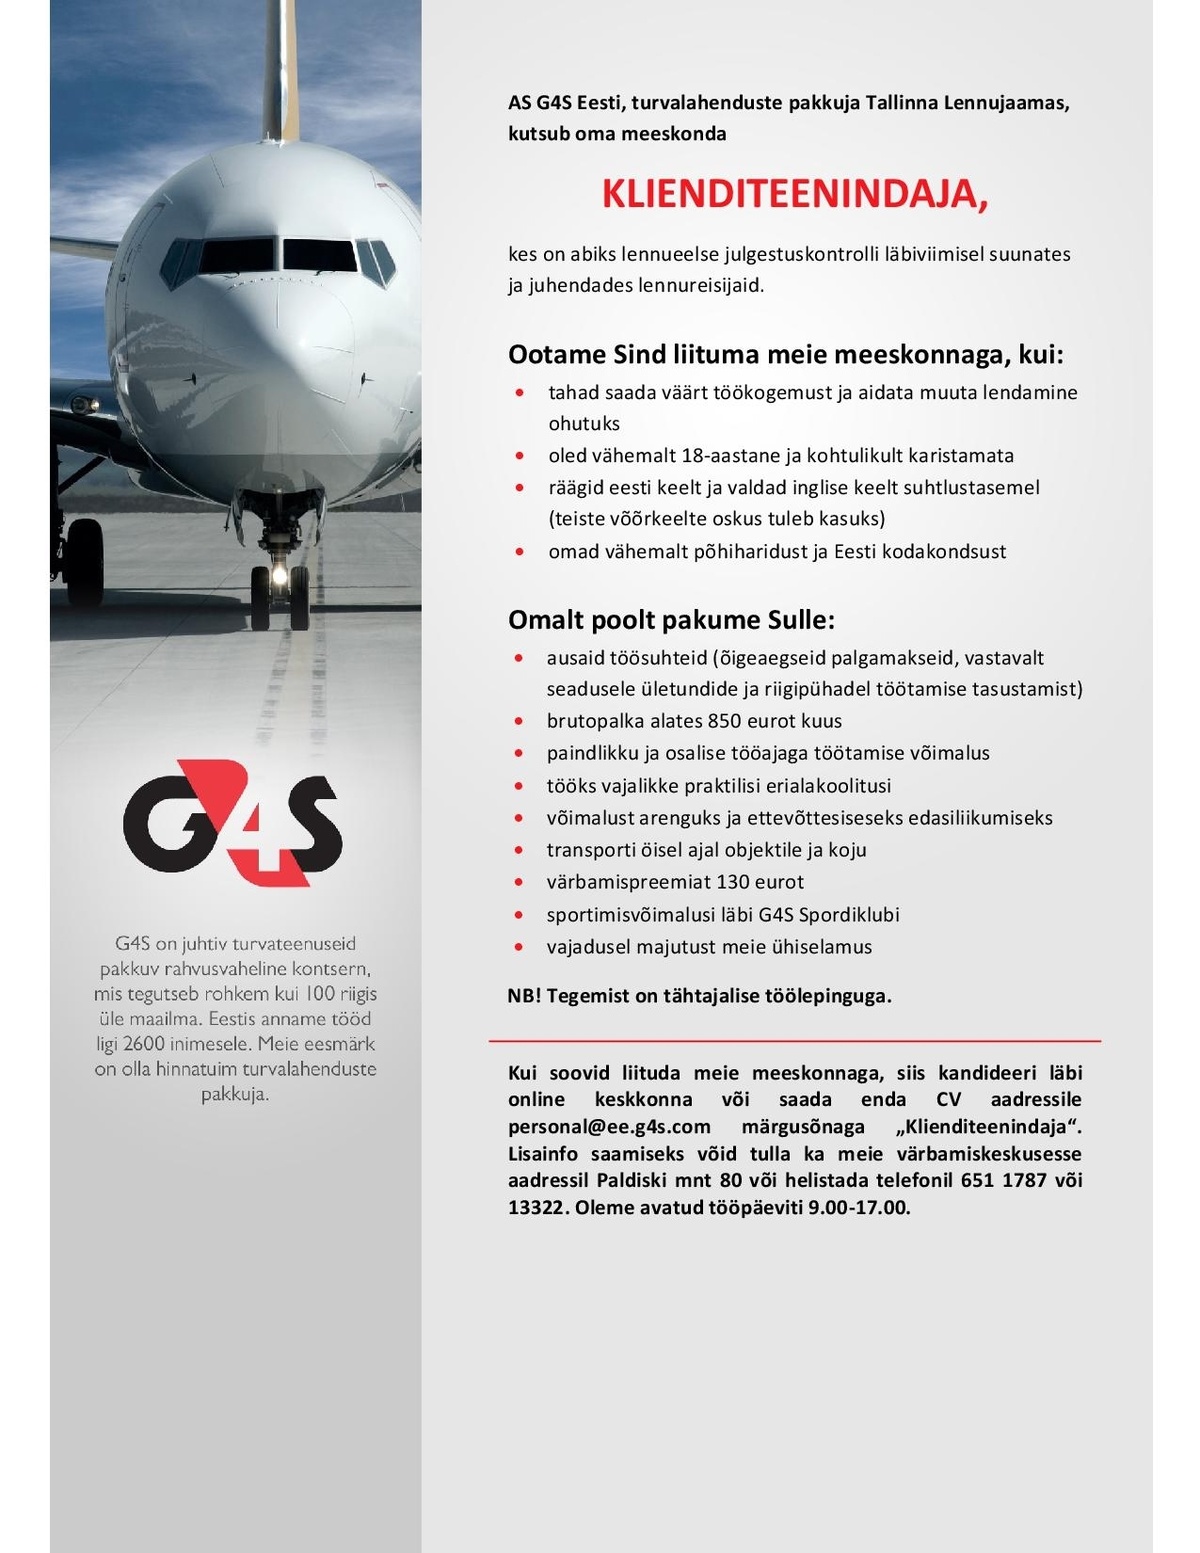 AS G4S Eesti Klienditeenindaja Tallinna Lennujaamas